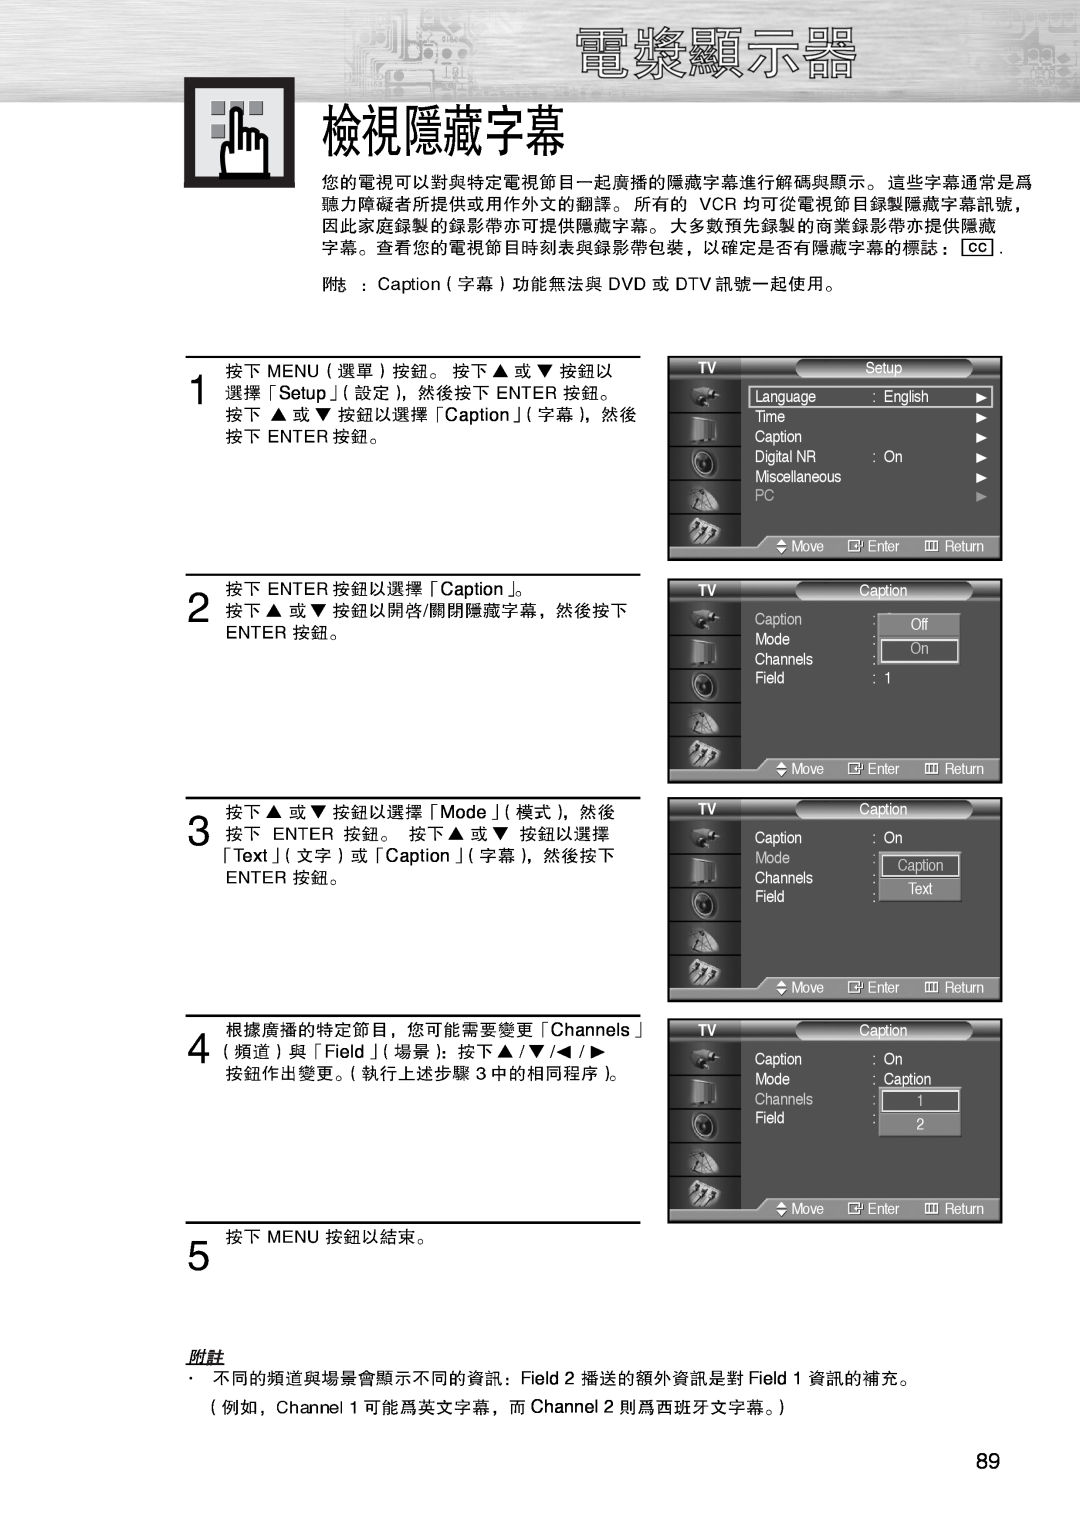 Samsung PL-42D4S manual Mode, Caption, Channels 